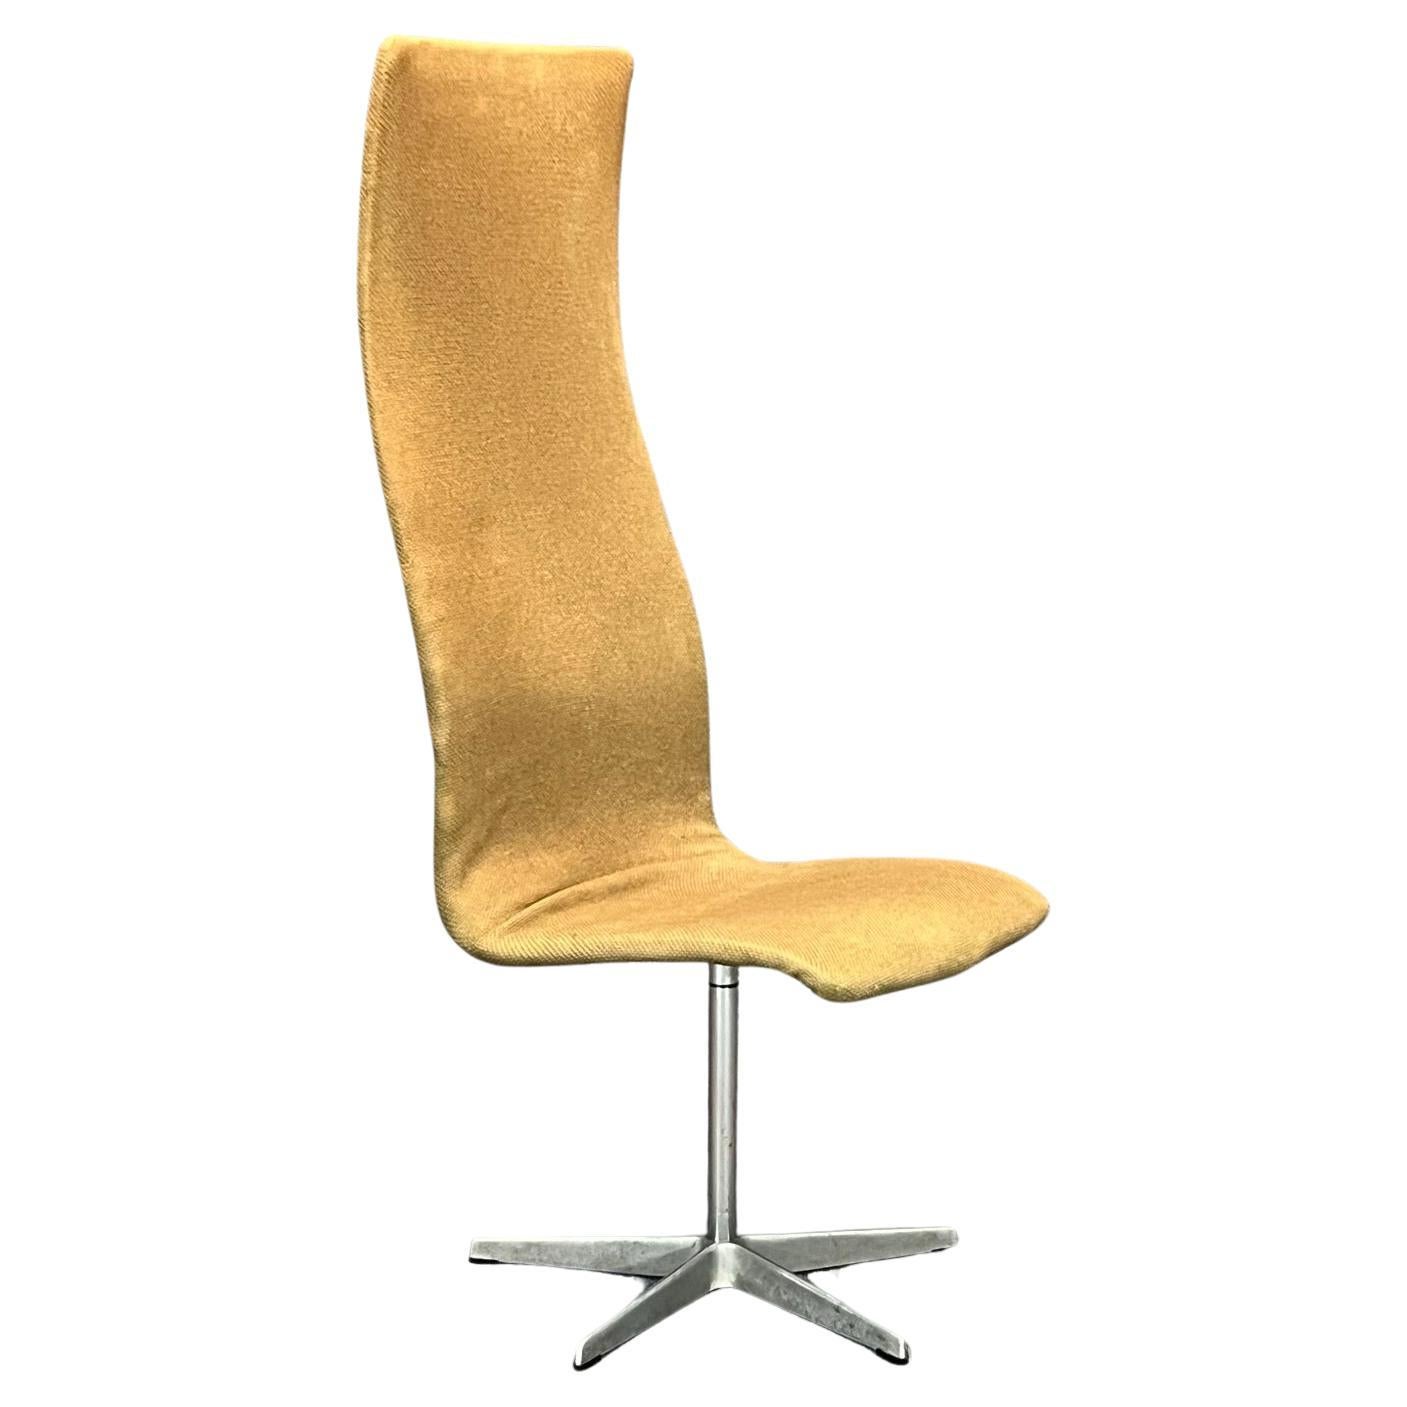 Danish Modern High Back Swivel Oxford chair by Arne Jacobsen for Fritz Hansen For Sale